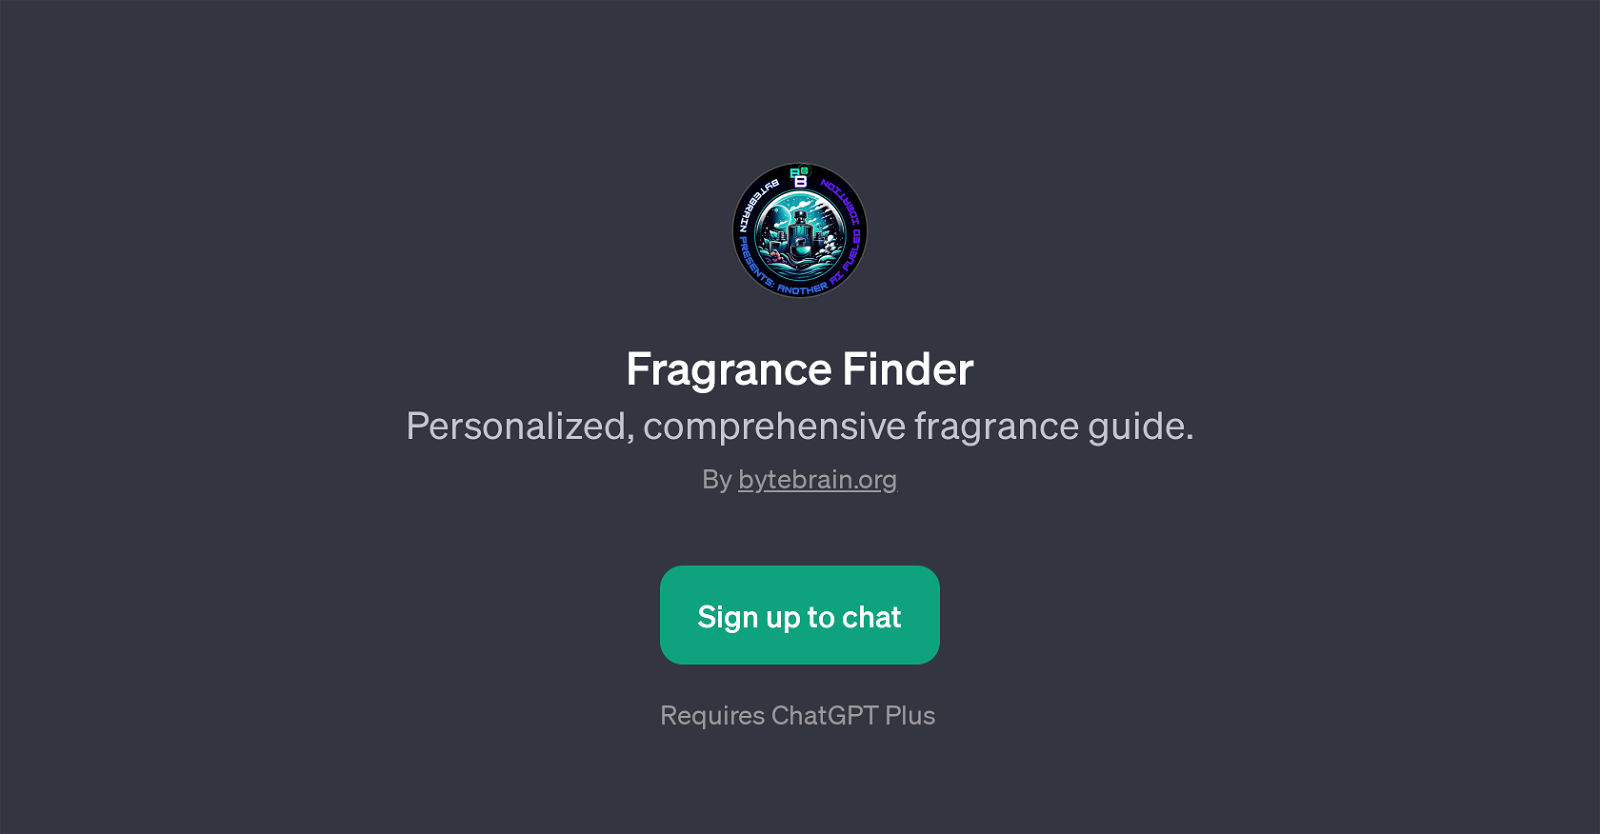 Fragrance Finder website